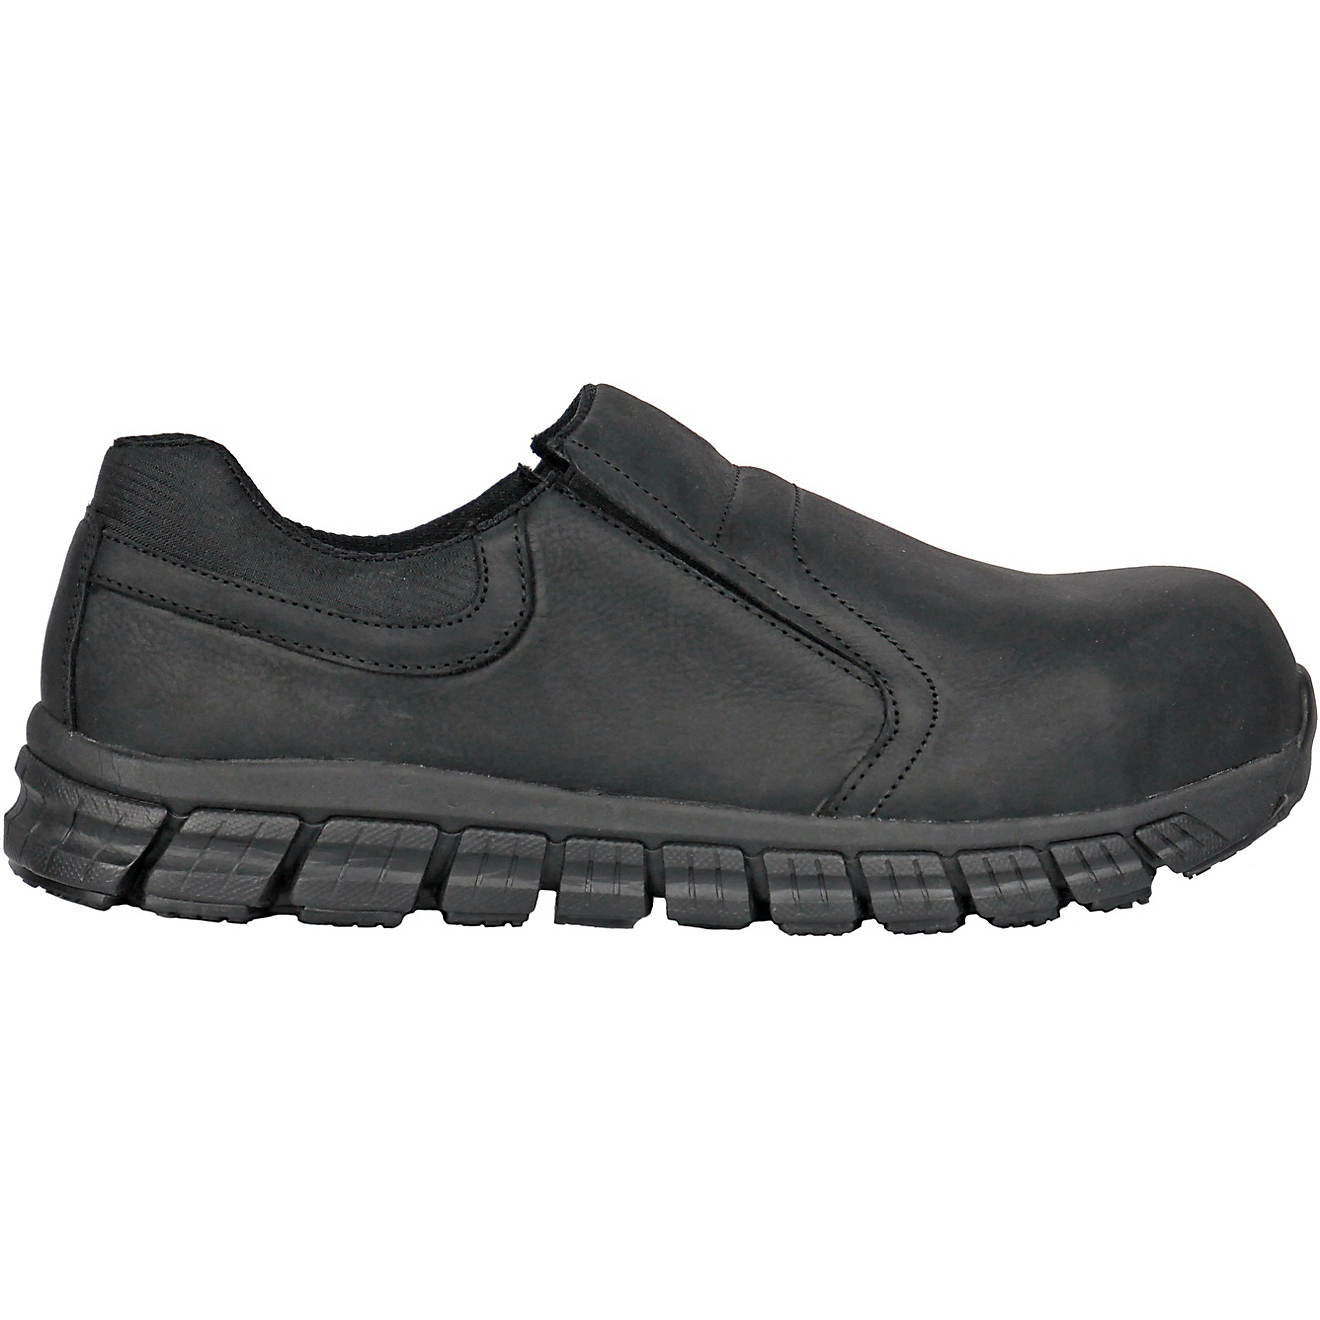 Hoss Boot Company Men's Slipknot Composite Toe Slip-On Shoes | Academy